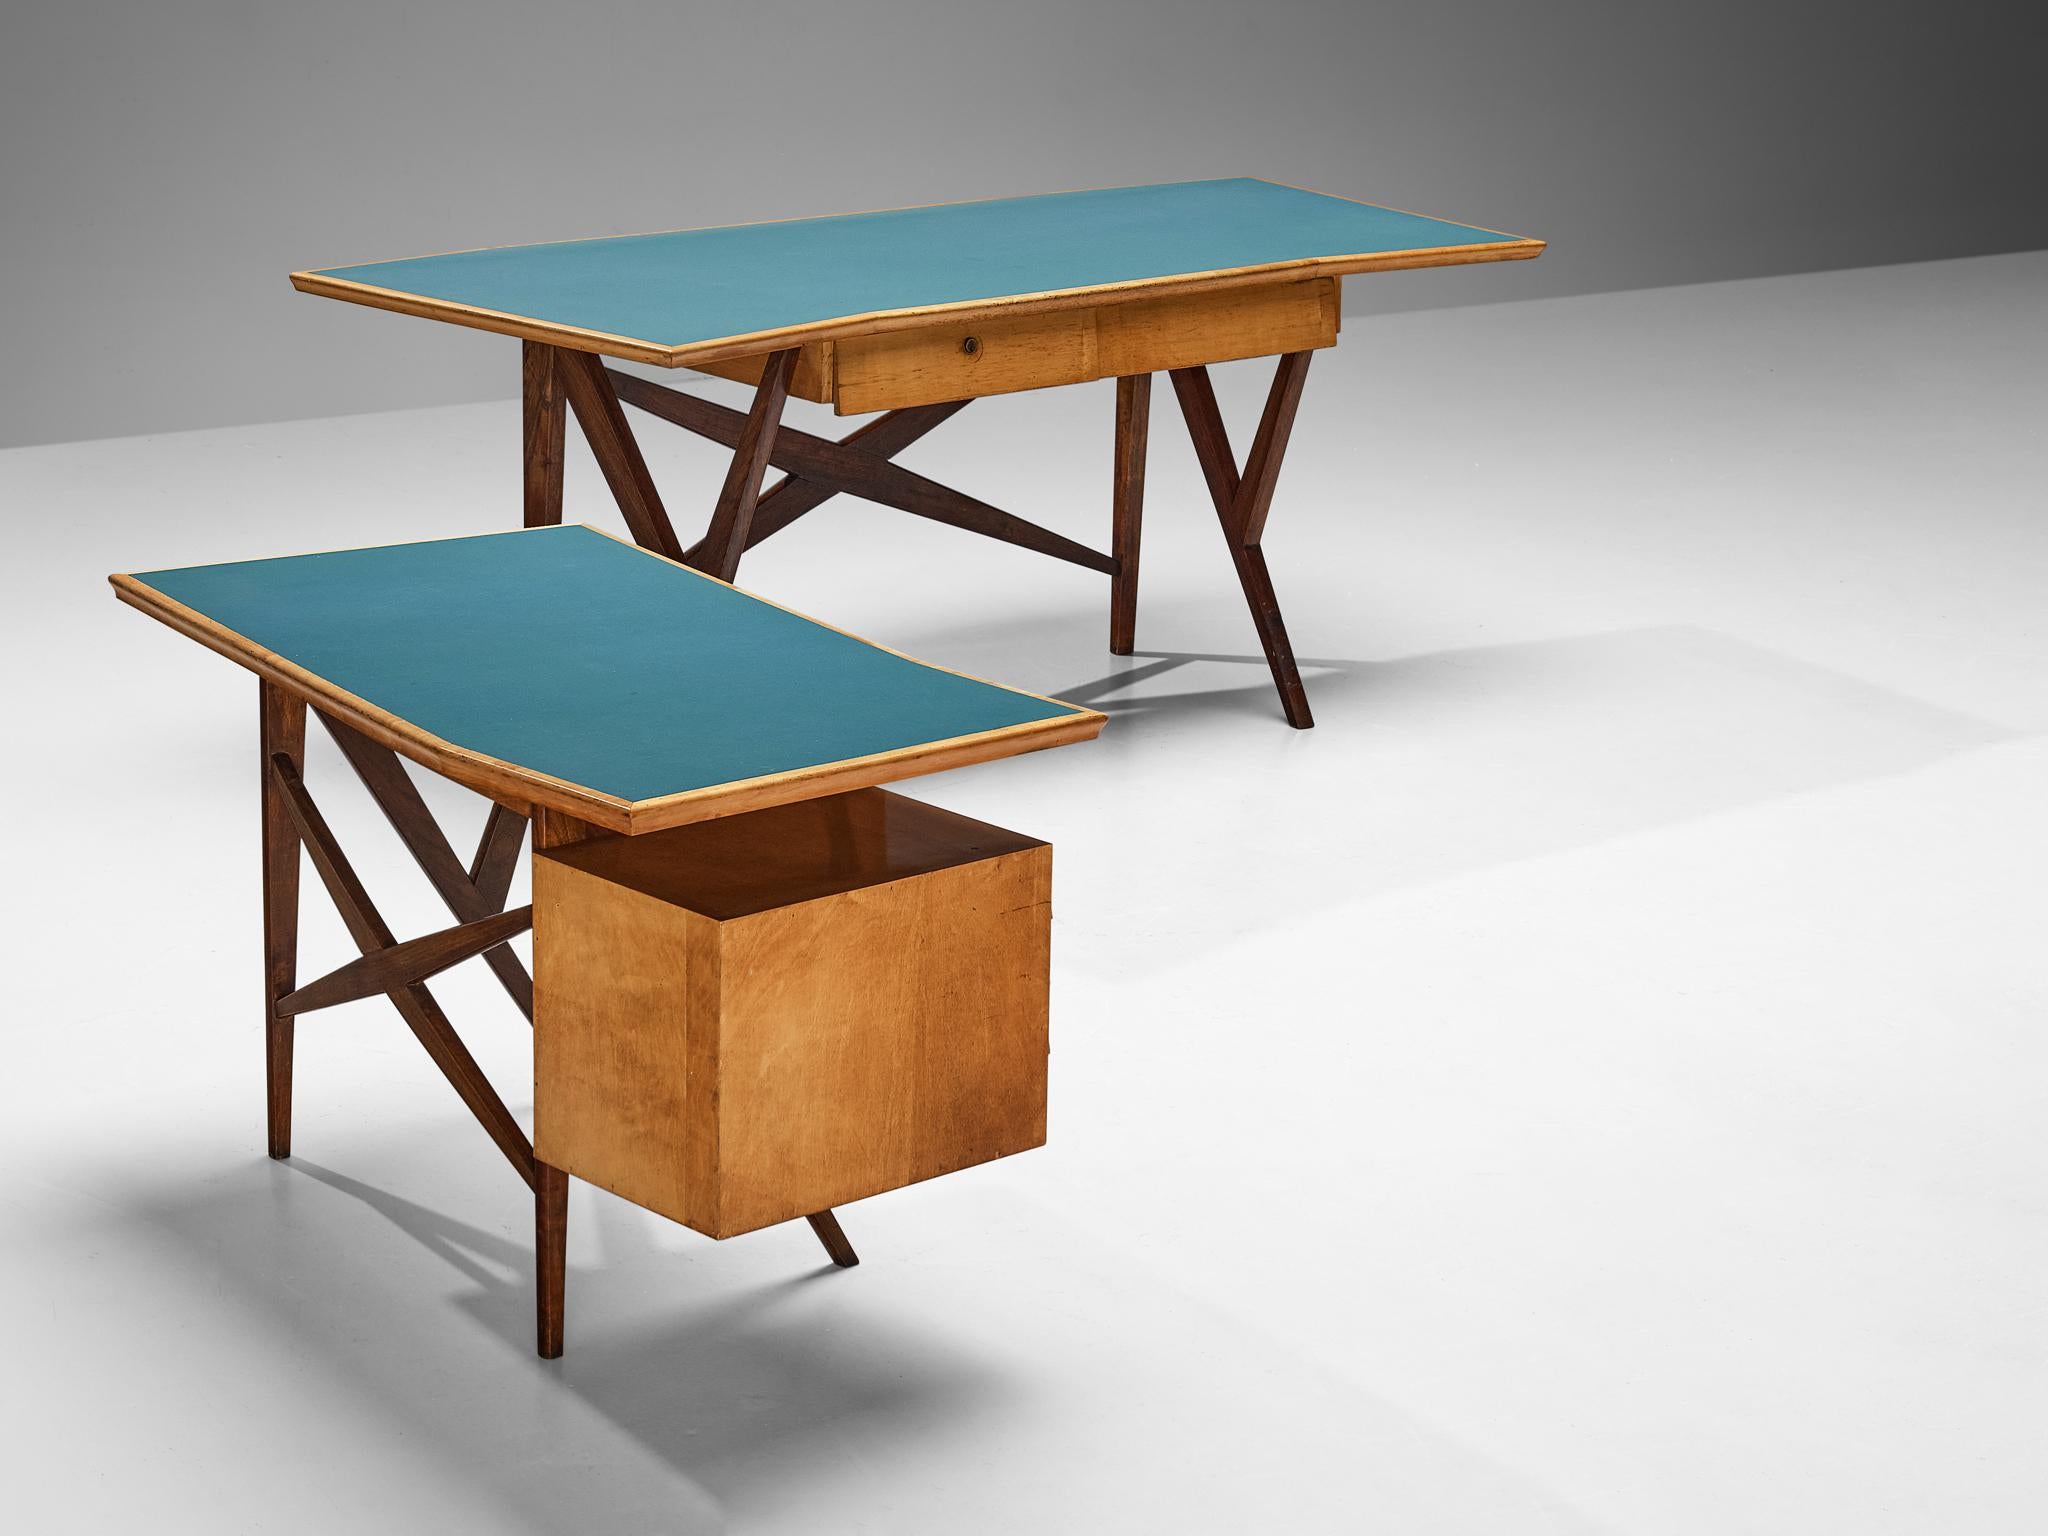 Gustavo & Vito Latis, Schreibtisch mit Rückwand, Mahagoni, Ahorn, Formica, Italien, um 1960

Dieser in Italien gefertigte Schreibtisch mit Rücklauf ist ein Zeugnis des Mitte des 20. Jahrhunderts, insbesondere in den 1950er und 1960er Jahren,